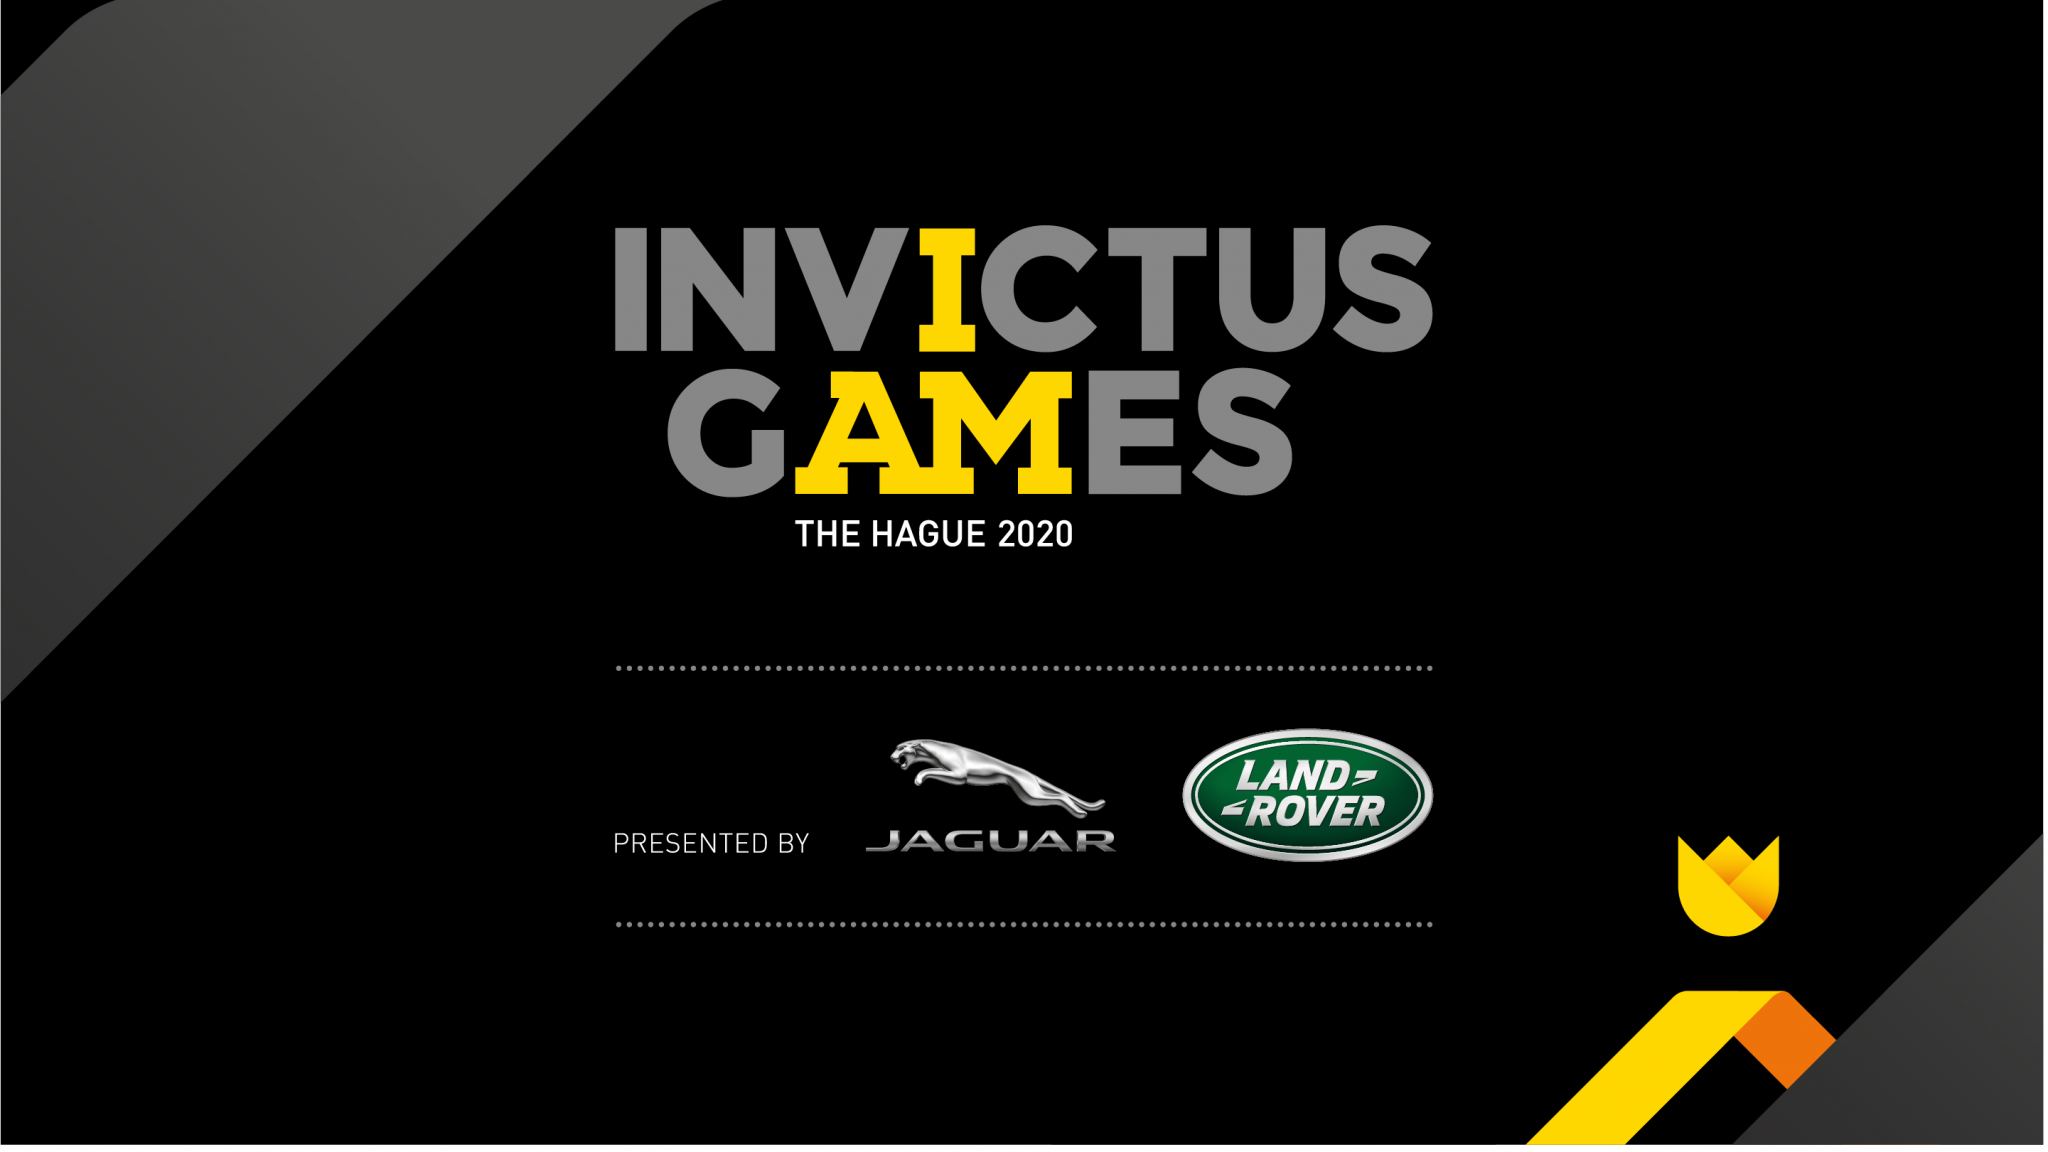 2020 Invictus Games postponed over coronavirus pandemic